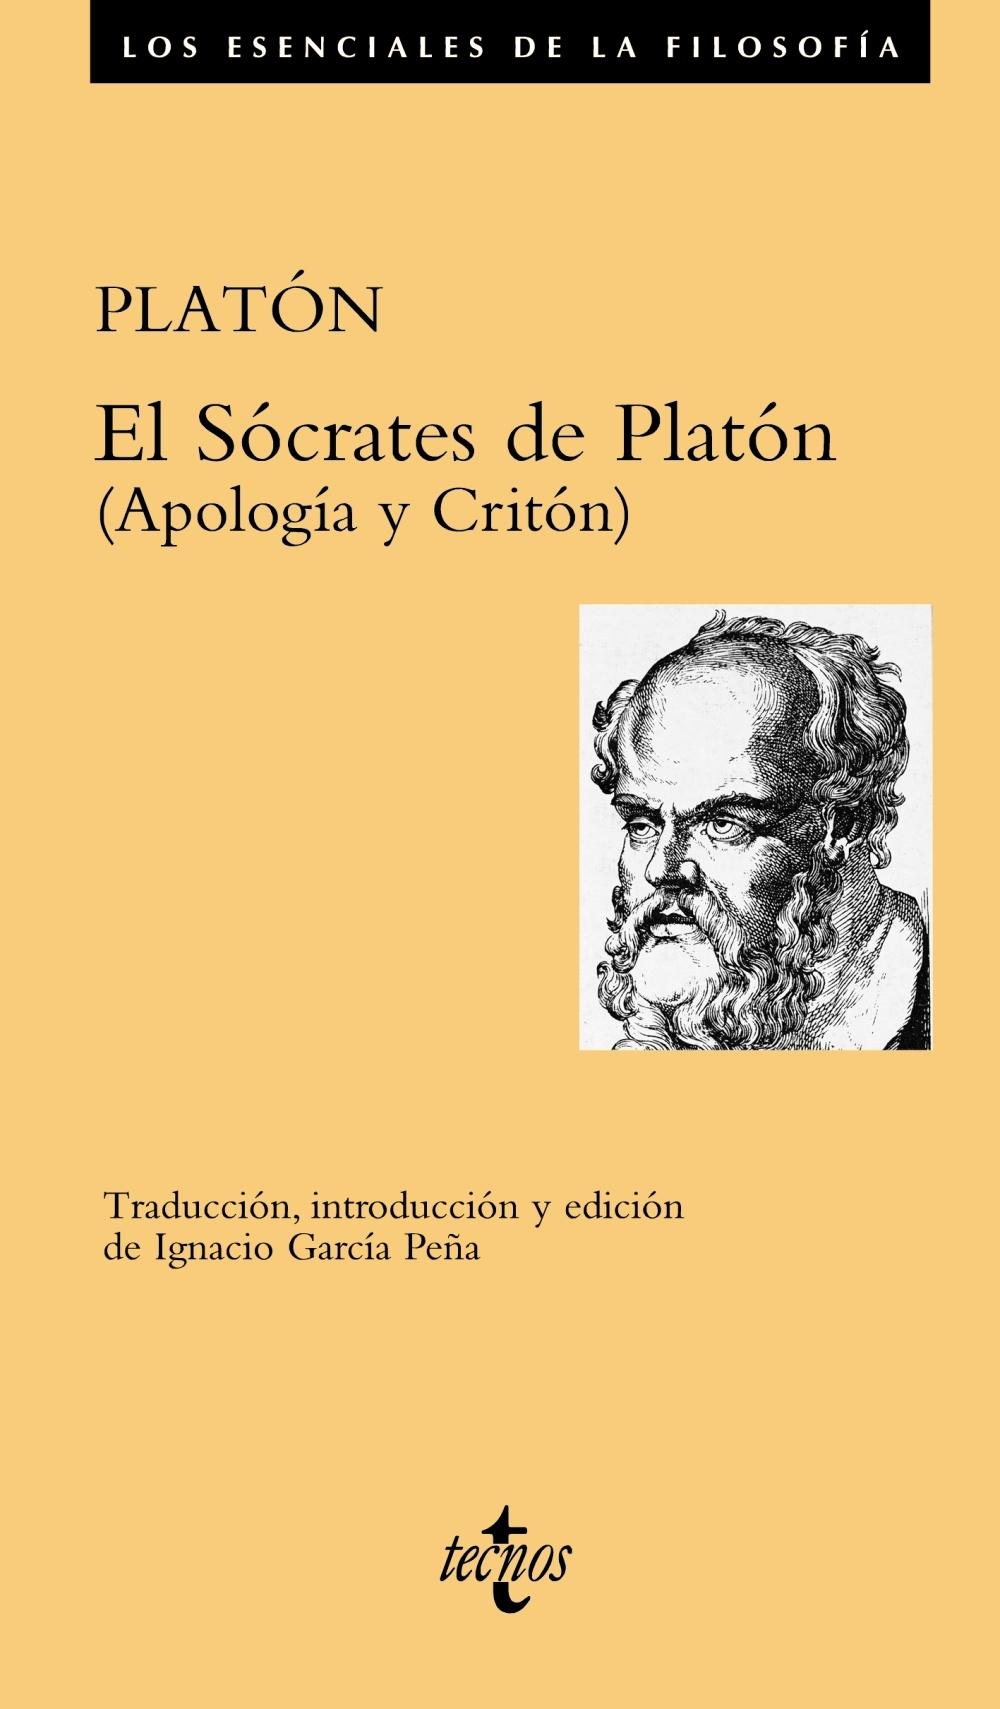 SÓCRATES DE PLATÓN, EL "(APOLOGÍA Y CRITÓN)"